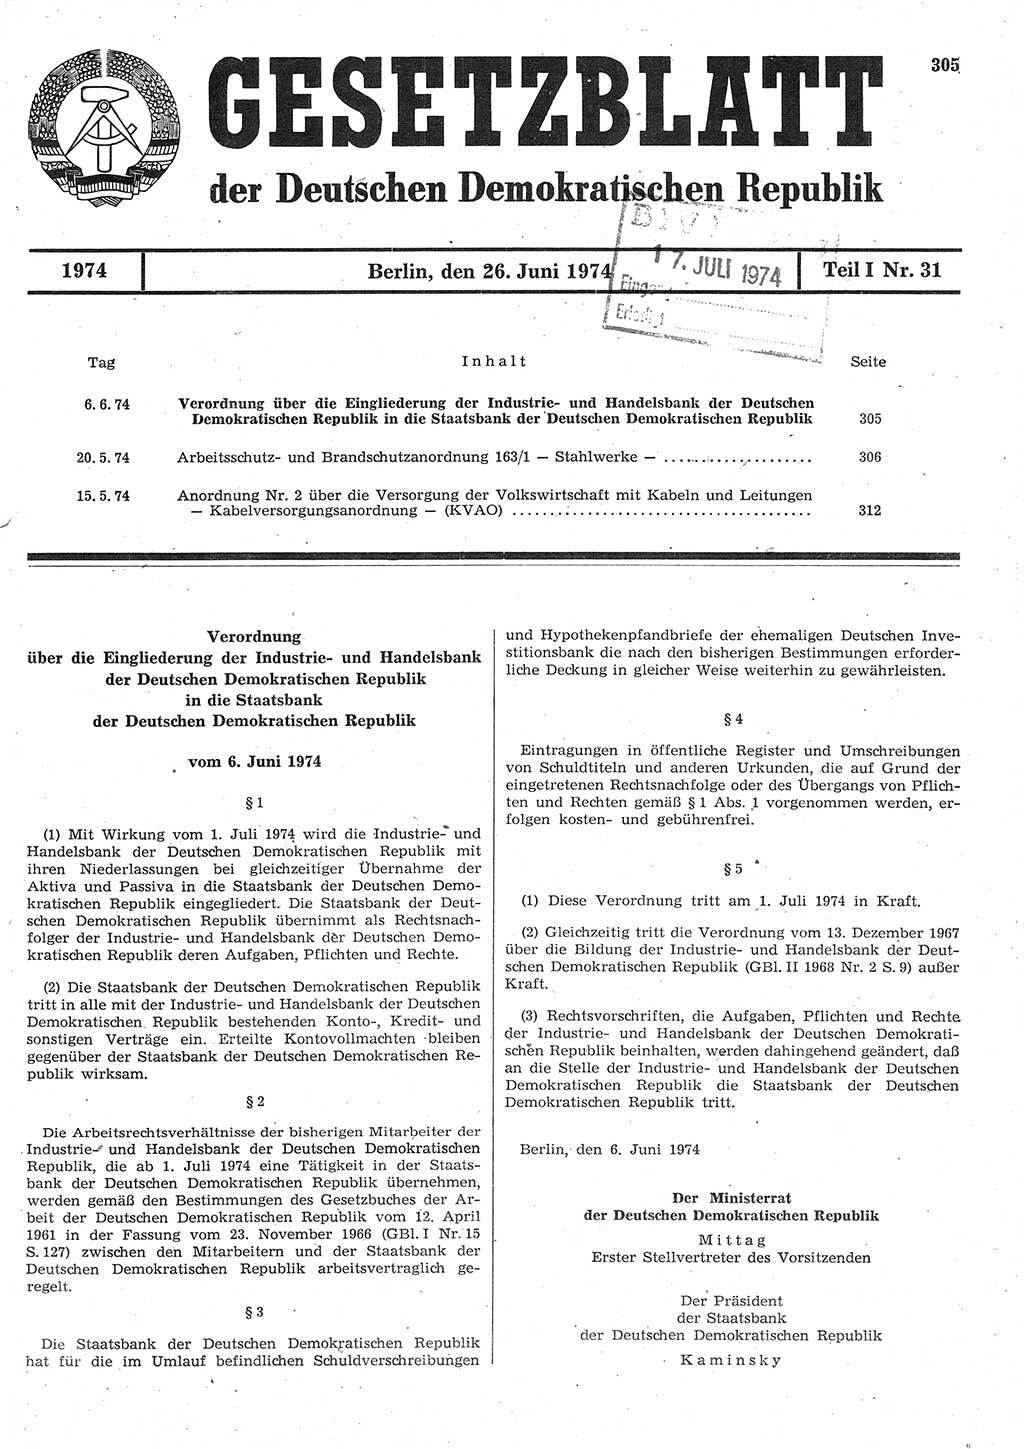 Gesetzblatt (GBl.) der Deutschen Demokratischen Republik (DDR) Teil Ⅰ 1974, Seite 305 (GBl. DDR Ⅰ 1974, S. 305)